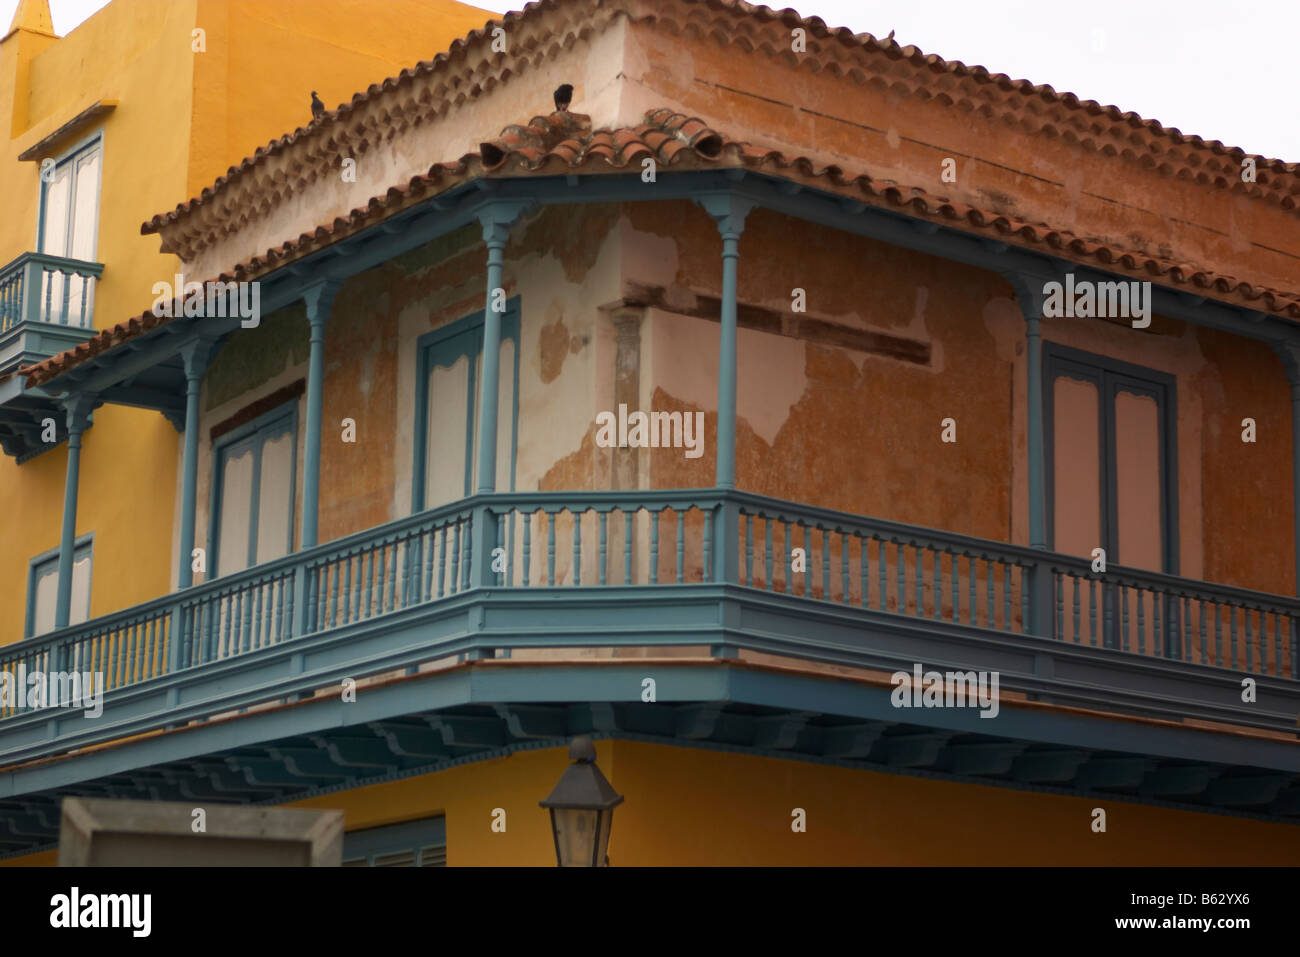 La construction ou l'architecture cubaine avec balcon et des fenêtres à volets, vieilles rues, Habana Vieja ou la vieille Havane, Cuba Banque D'Images